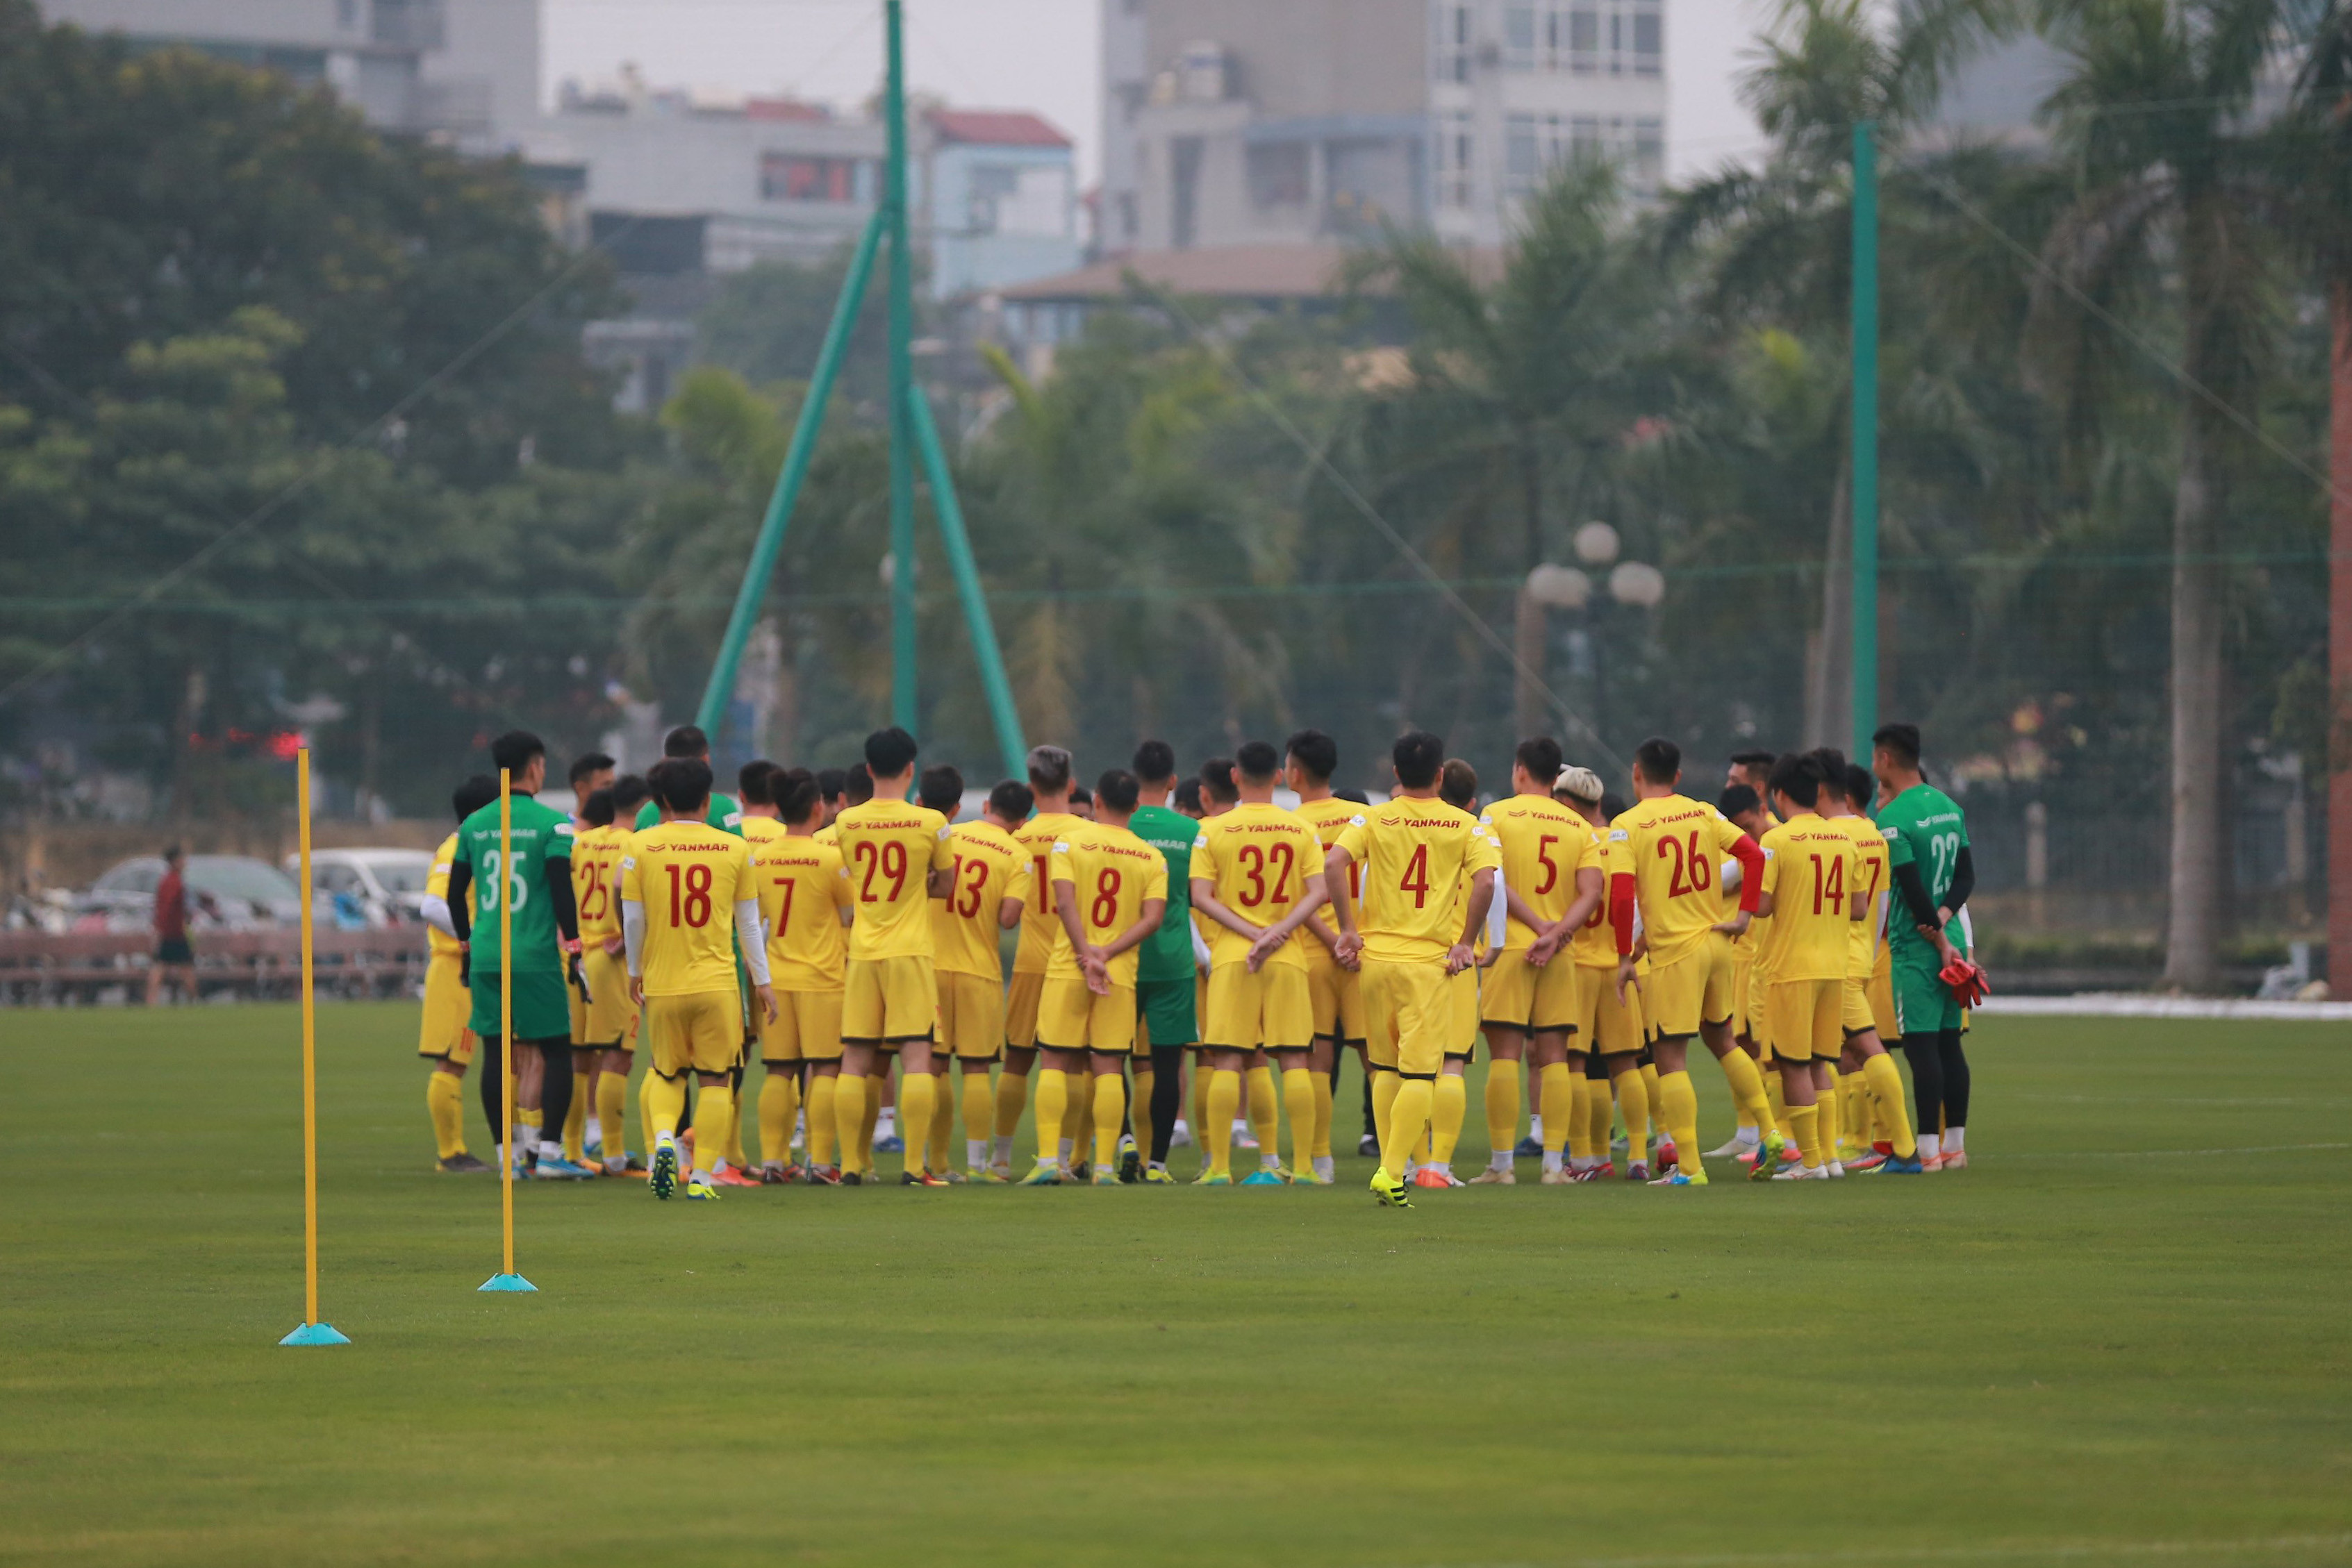 ĐT Việt Nam sẽ có buổi họp nội bộ để định hướng mục tiêu năm 2021, tất cả các cầu thủ sẽ được đóng góp ý kiến với HLV Park Hang-seo. Ảnh: Hải Hoàng